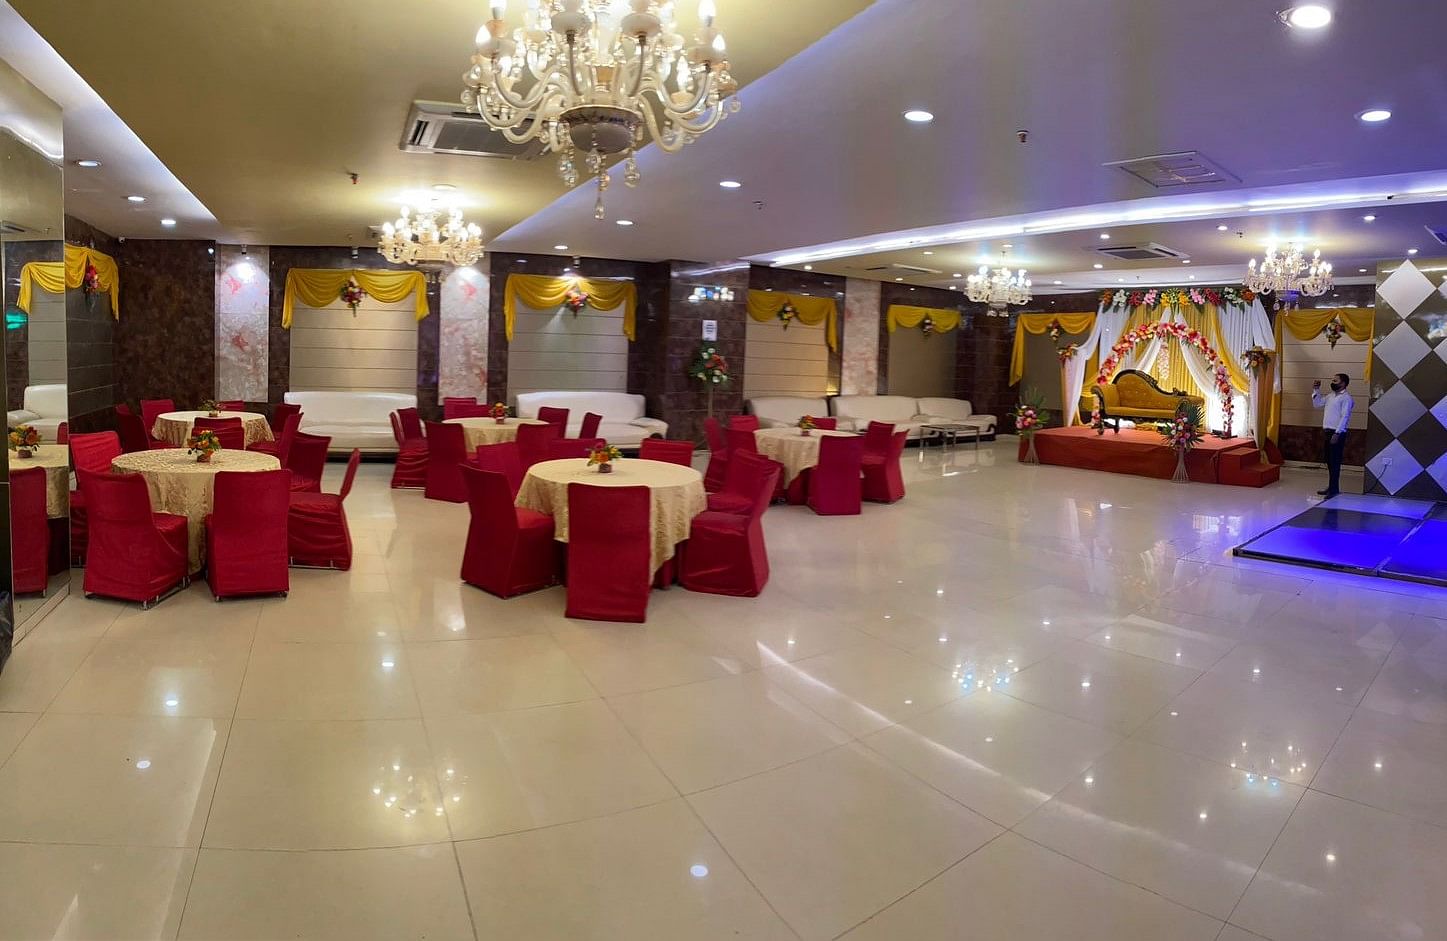 Banana Tree Hotel Banquets in Sahibabad, Ghaziabad